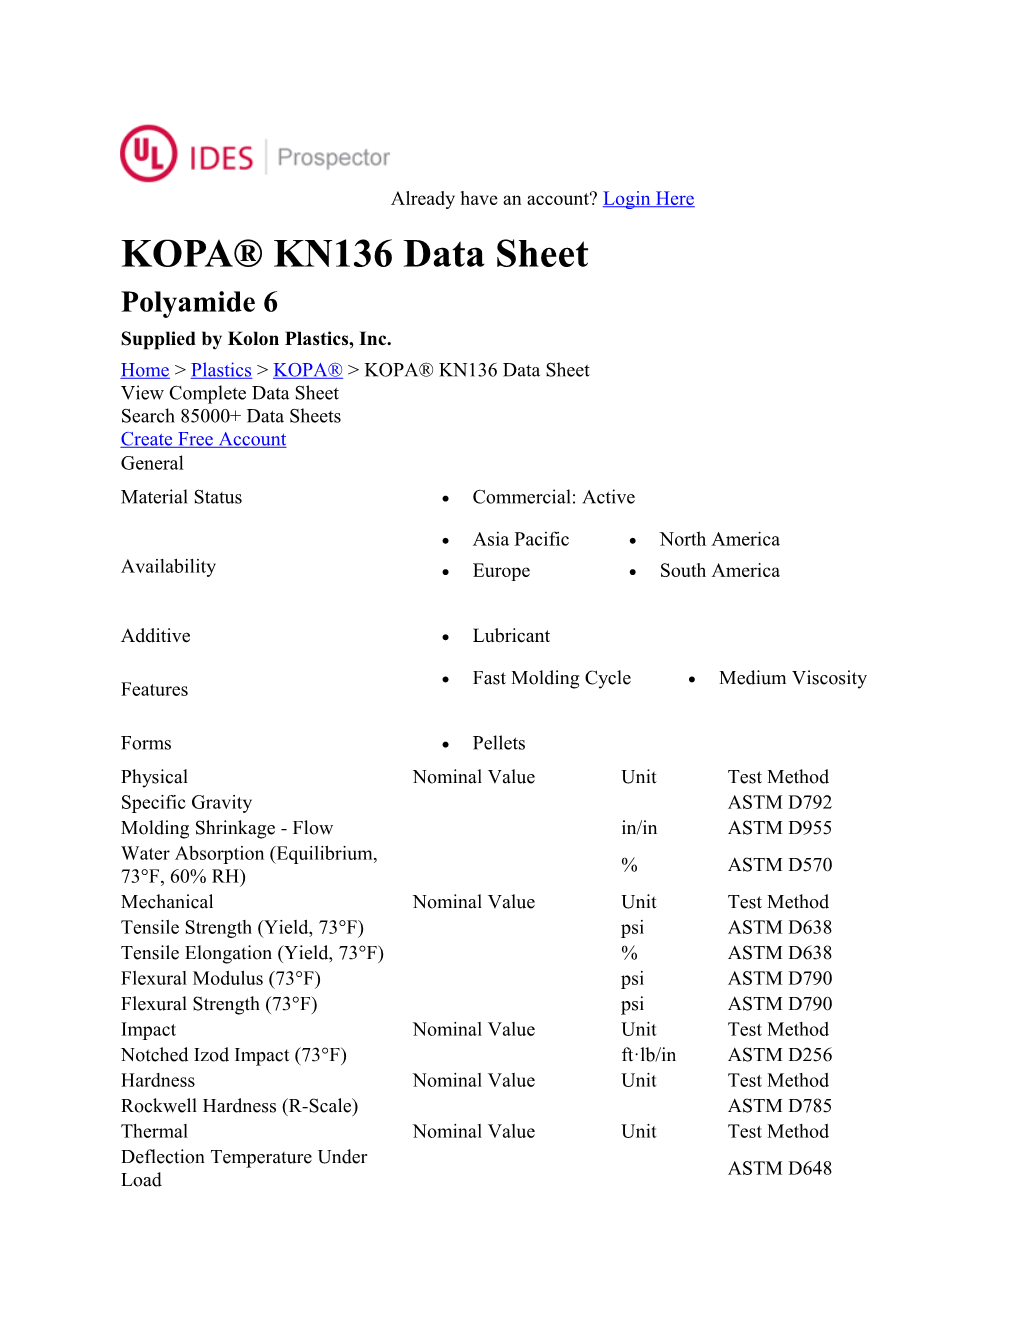 KOPA KN136 Data Sheet